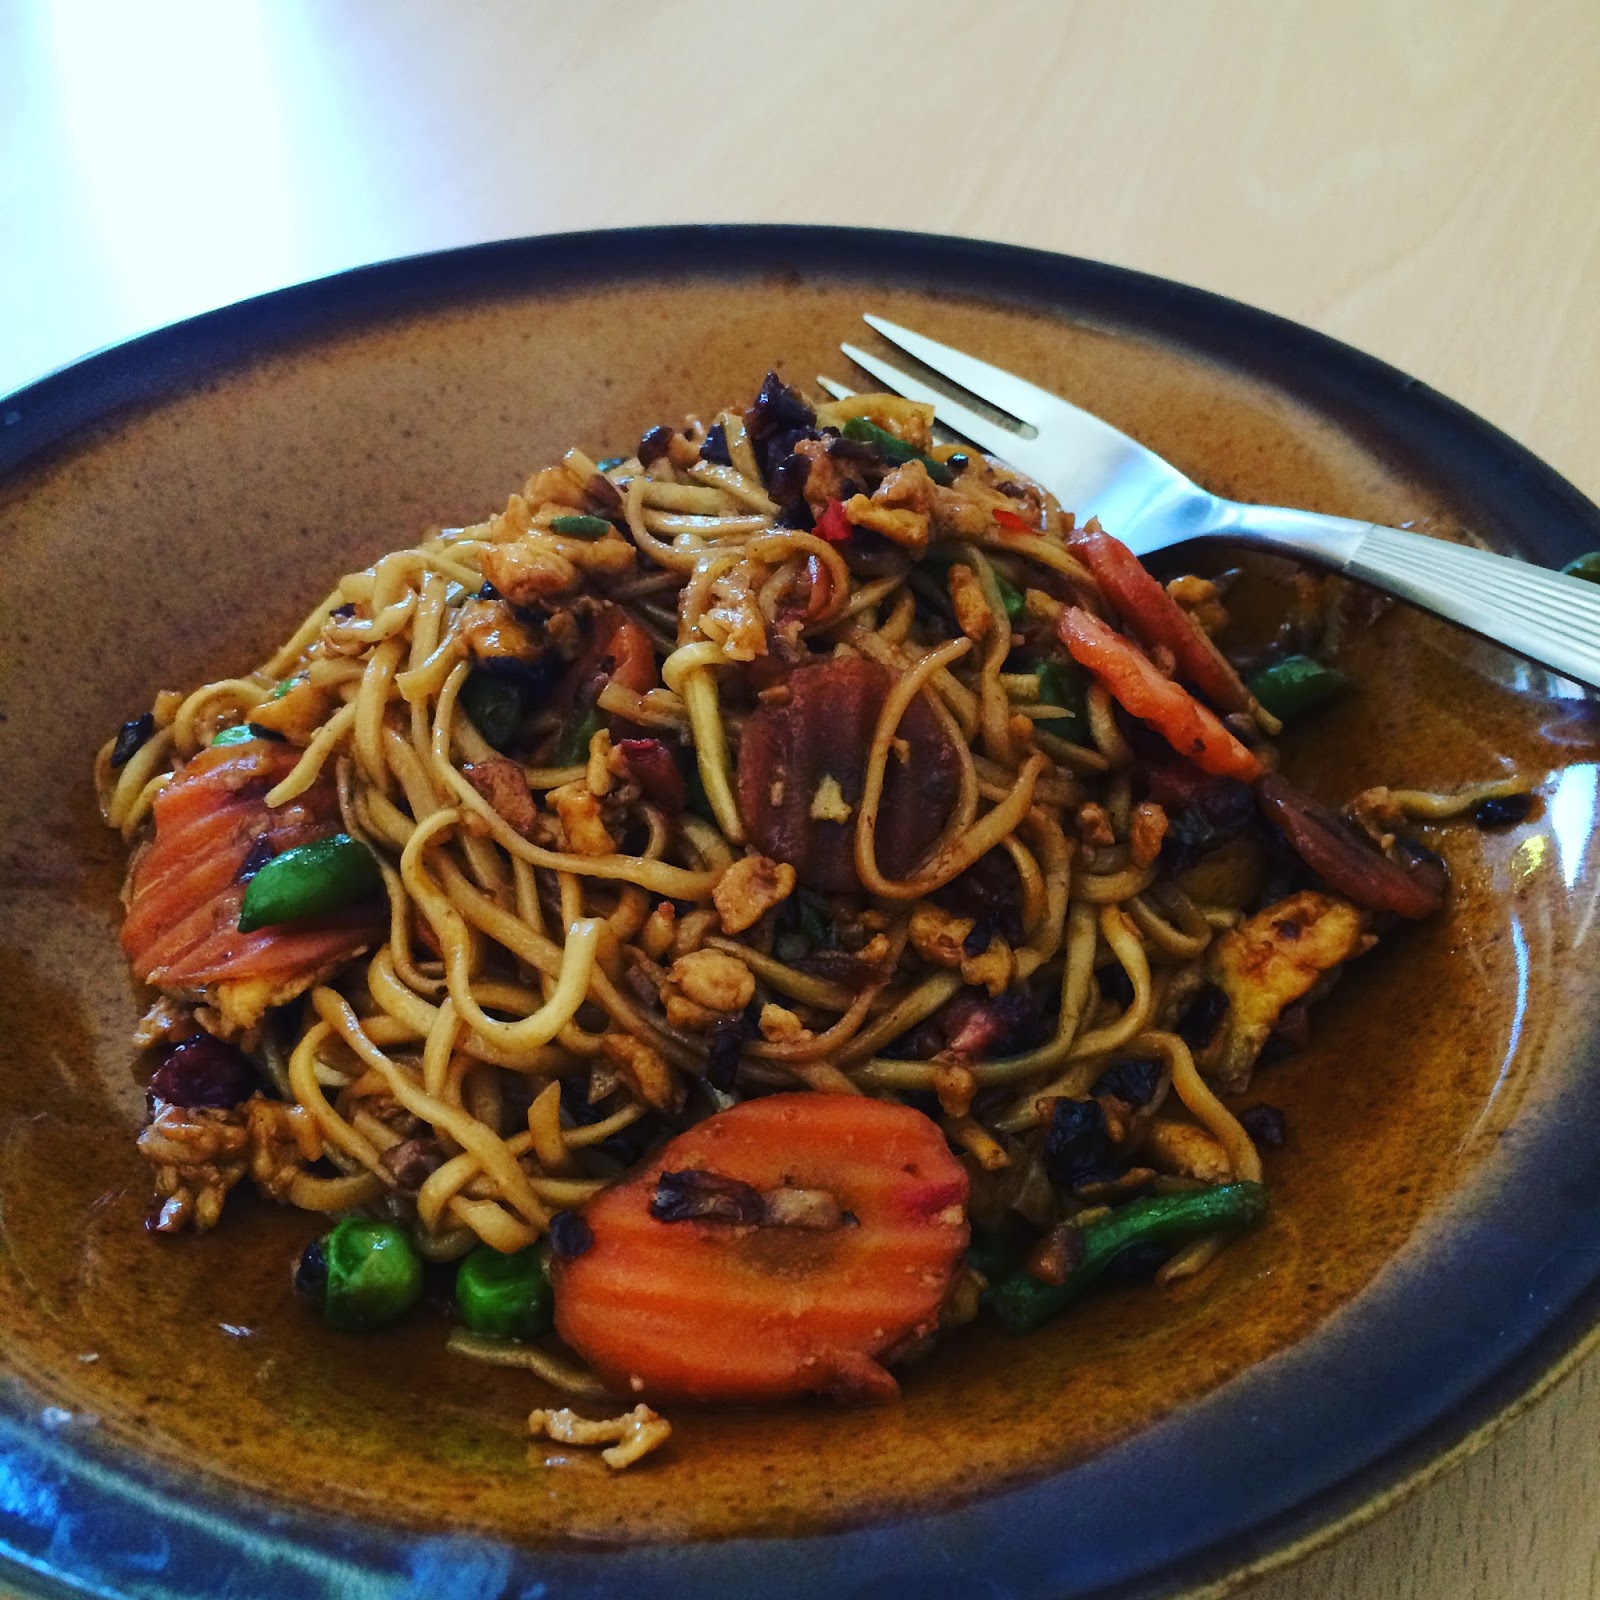 Travel with Alaine: Nasi goreng and Bakmi goreng recipe